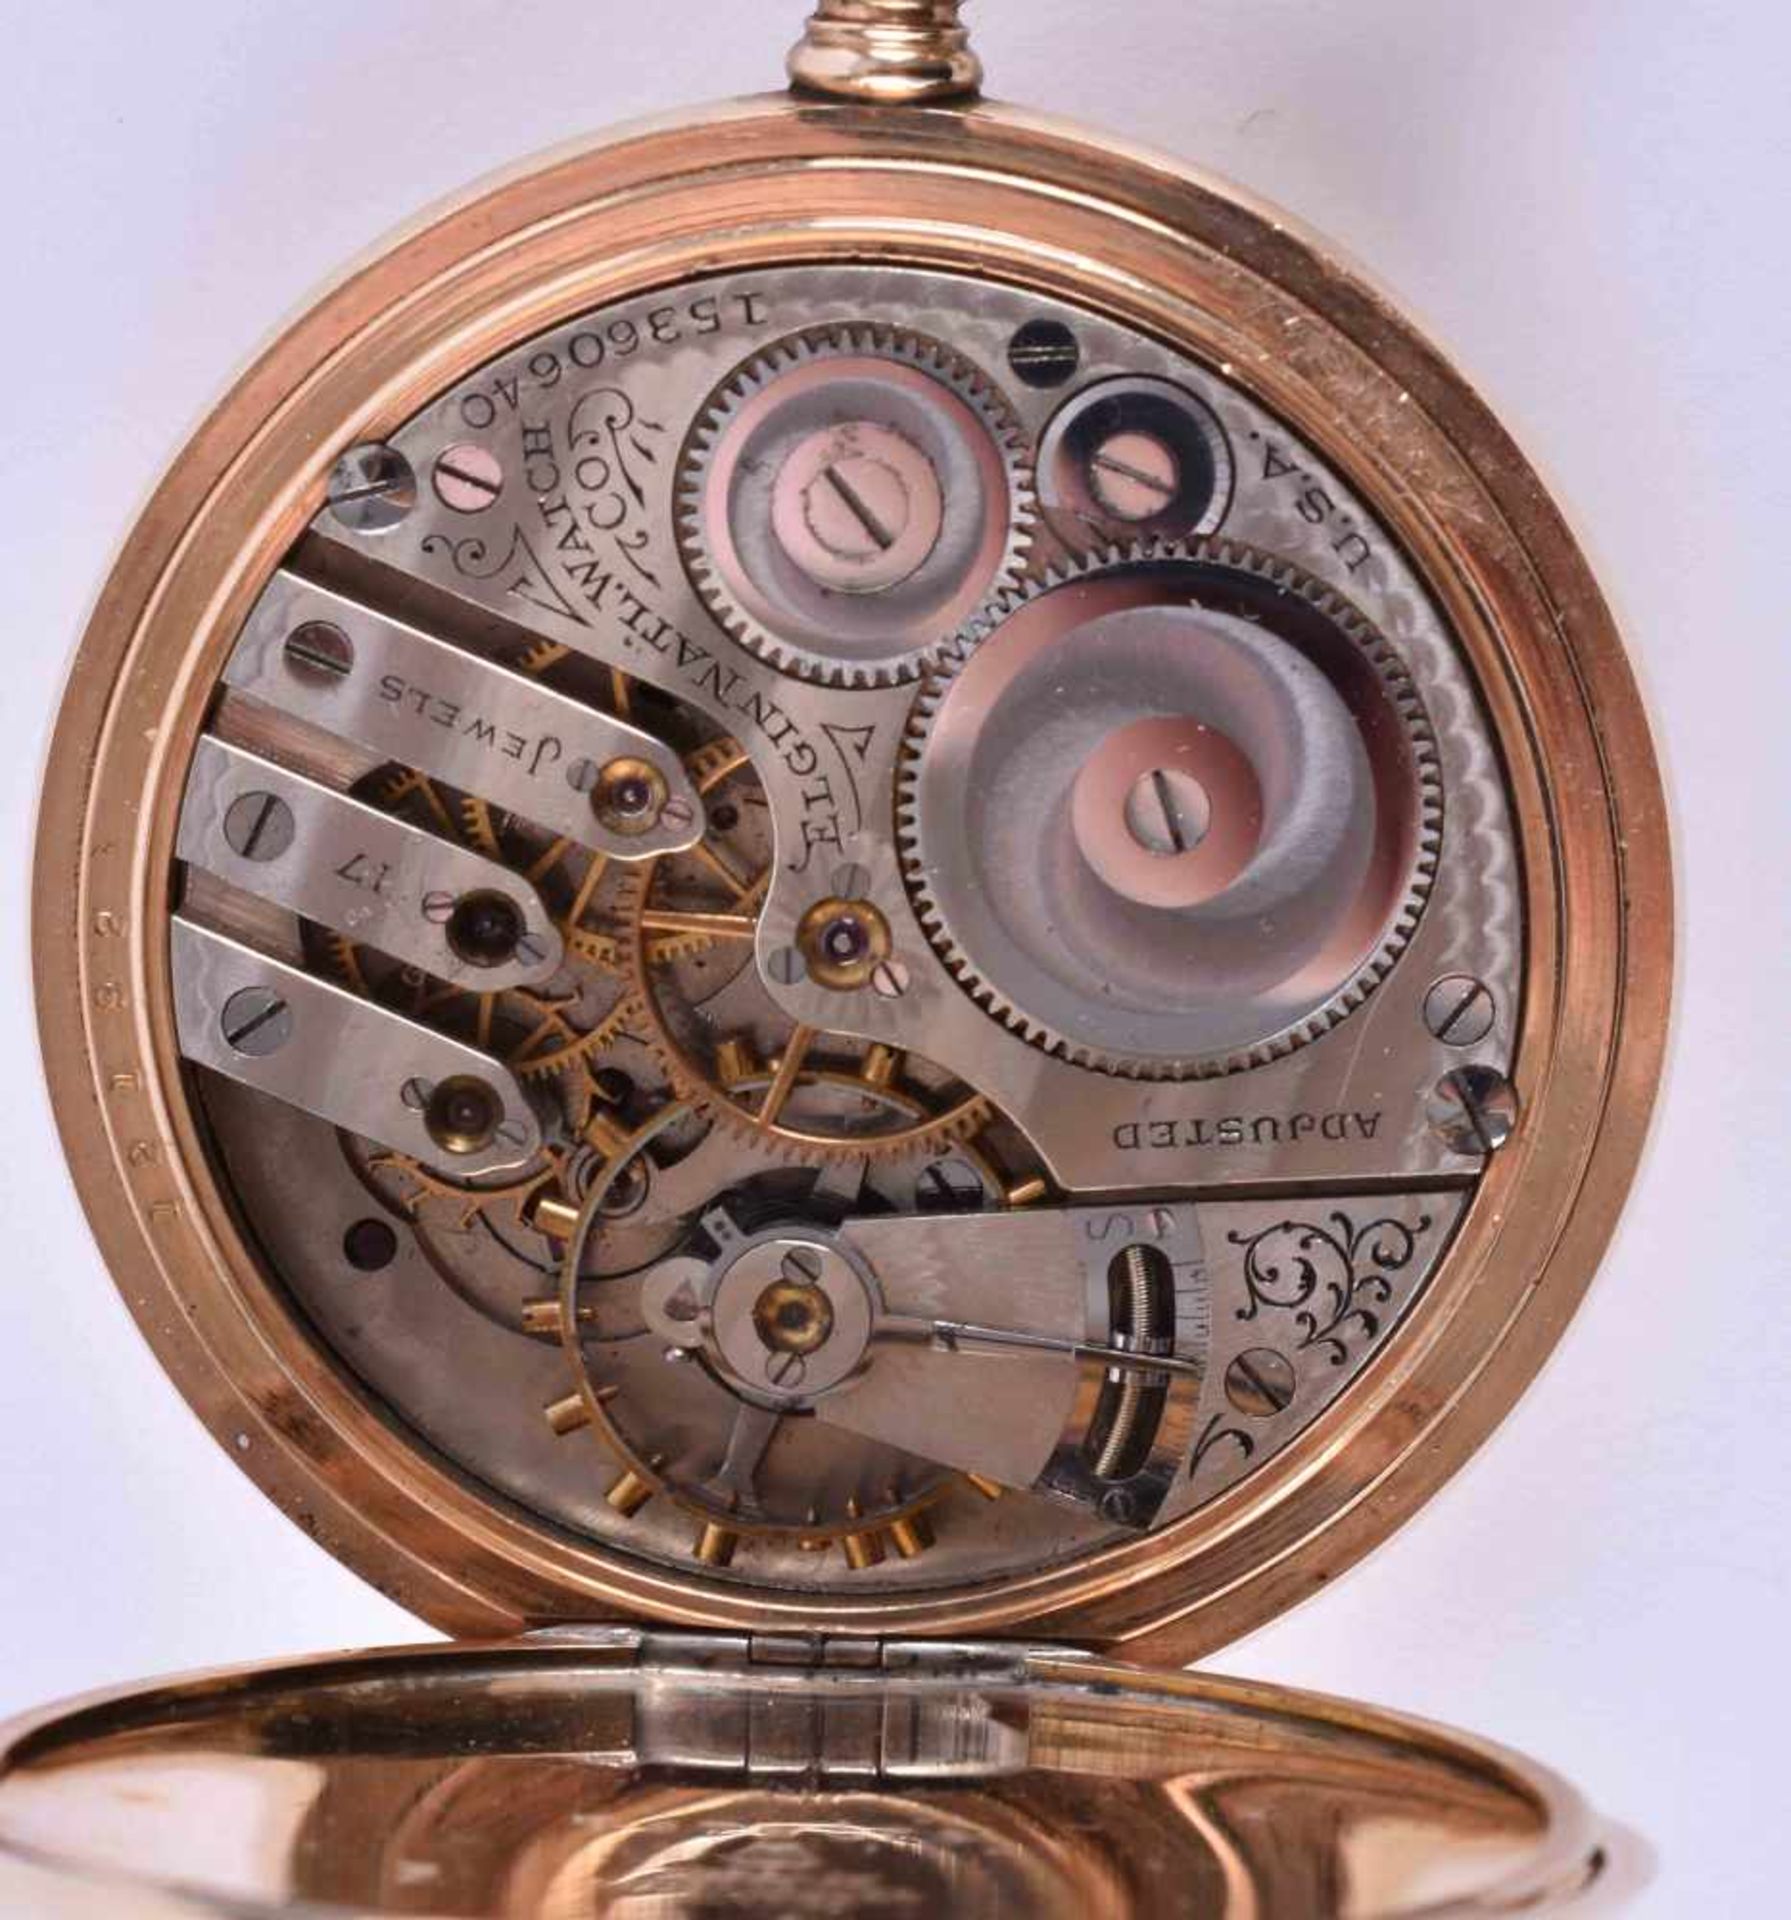 Taschenuhr Elgin National Watch Co. um 1900vergoldetes Gehäuse mit Innendeckel, Werk 17 Steine, - Bild 5 aus 5